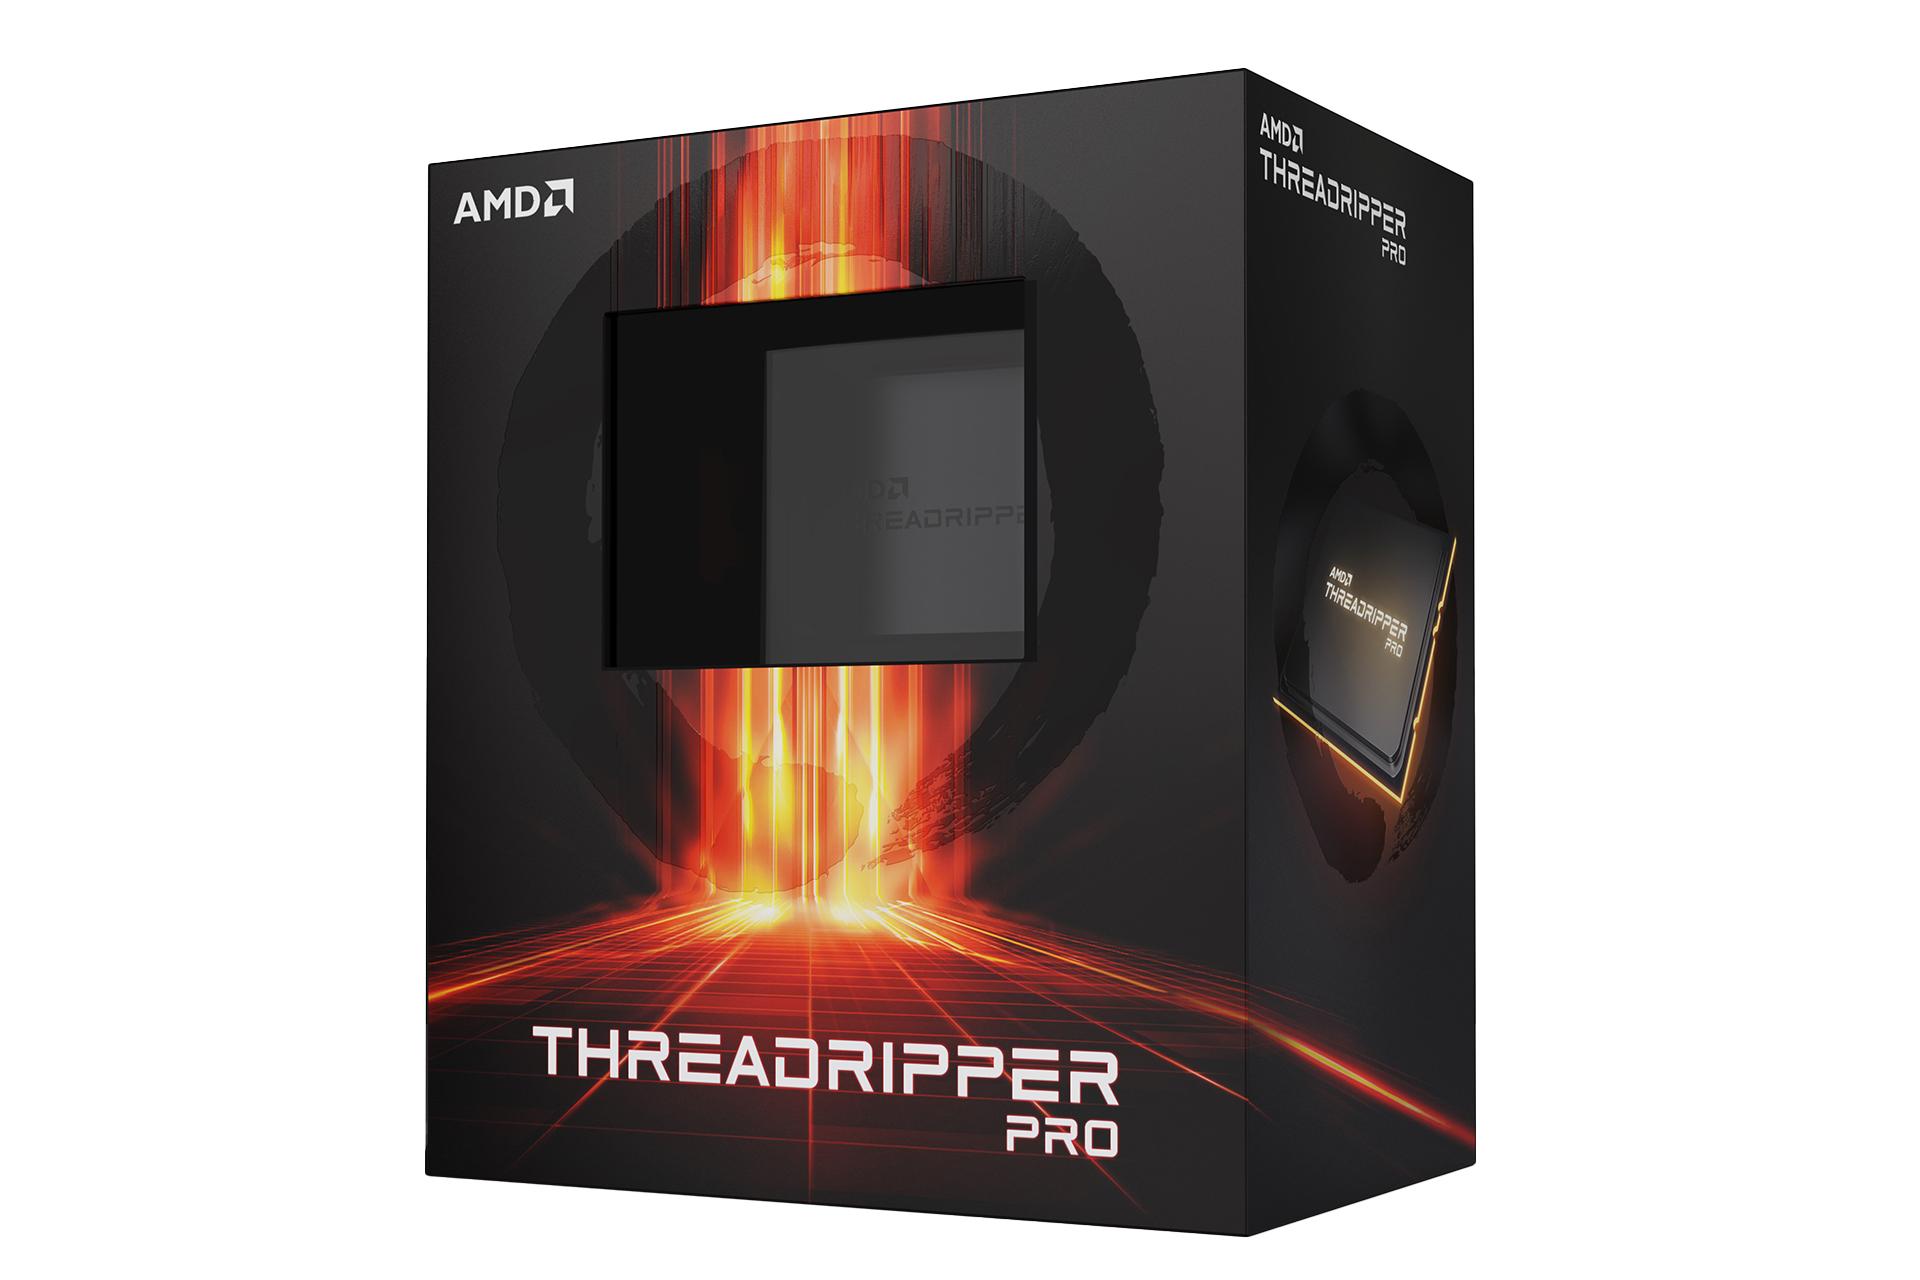 نمای سمت راست جعبه پردازنده AMD رایزن تردریپر پرو / AMD Ryzen Threadripper PRO